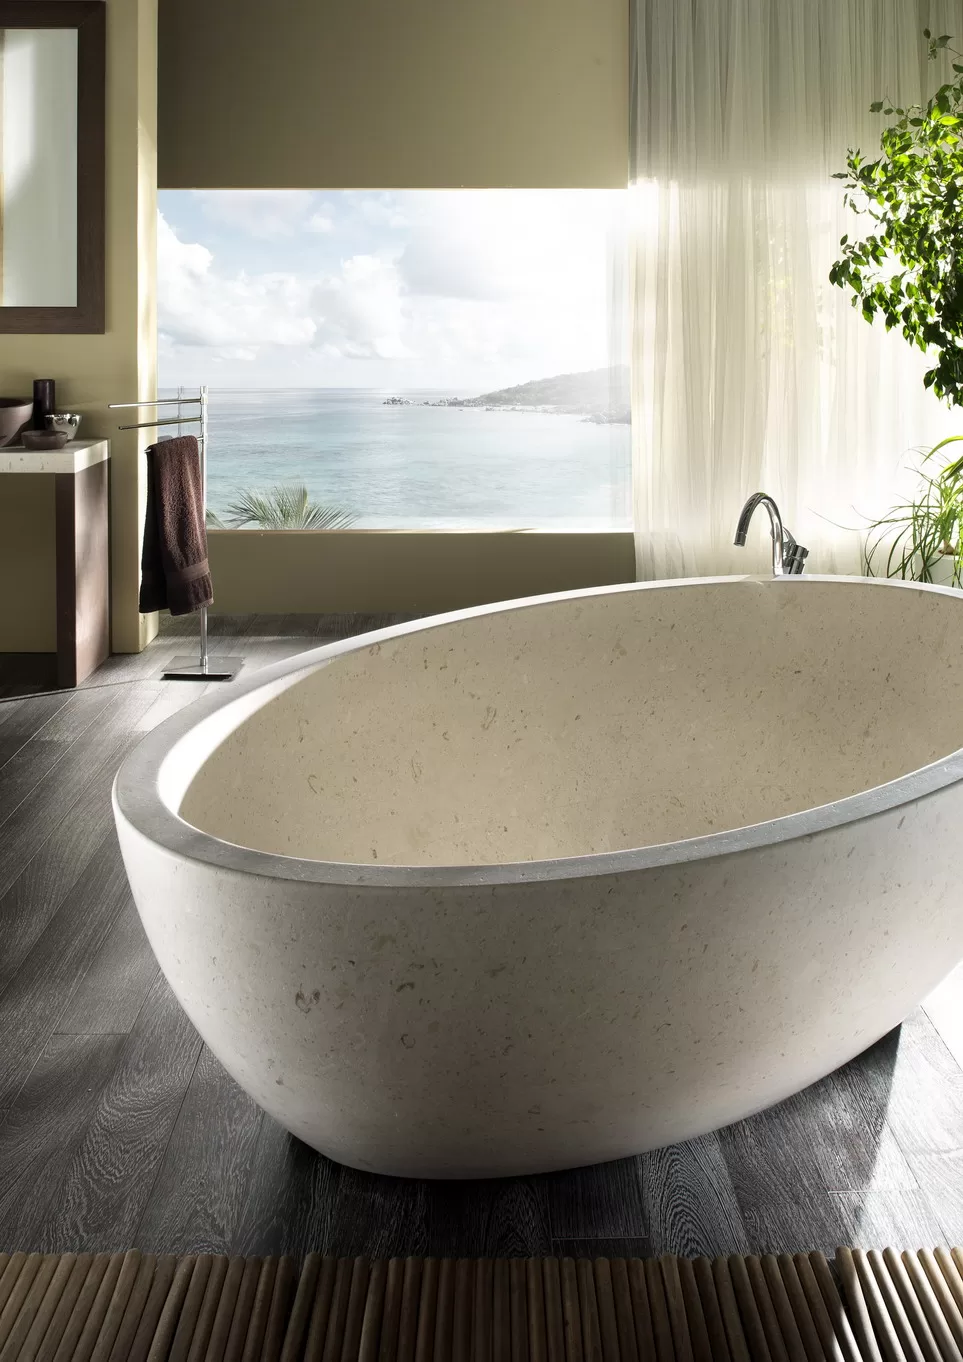 Gaia Collection bath tub